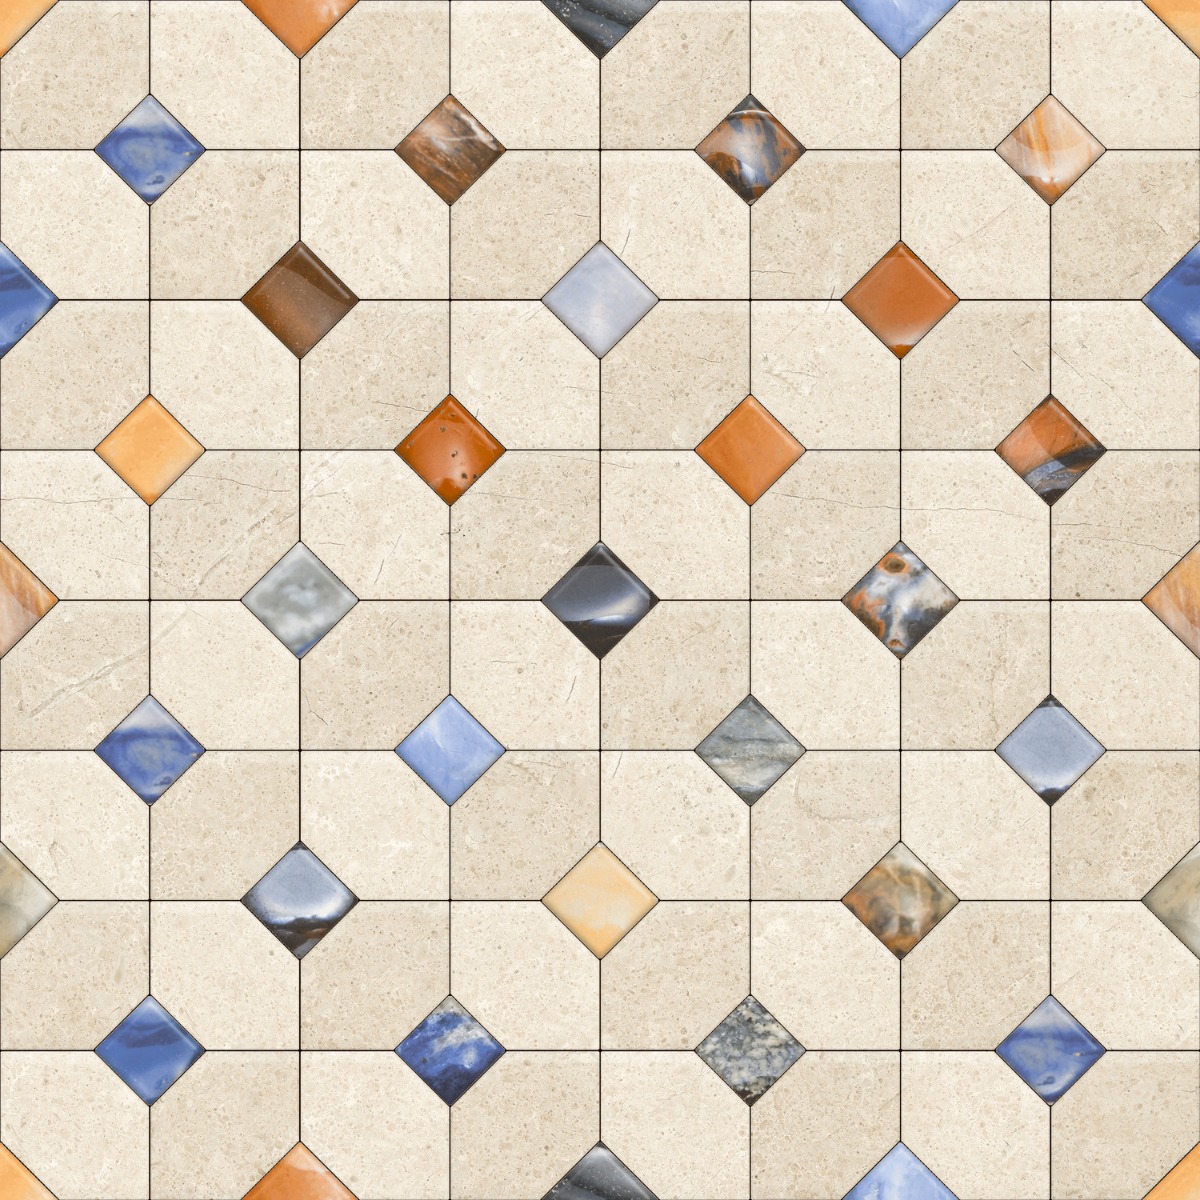 Geometric Tiles for Bathroom Tiles, Balcony Tiles, Swimming Pool Tiles, Hospital Tiles, Bar/Restaurant, Commercial/Office, Outdoor/Terrace